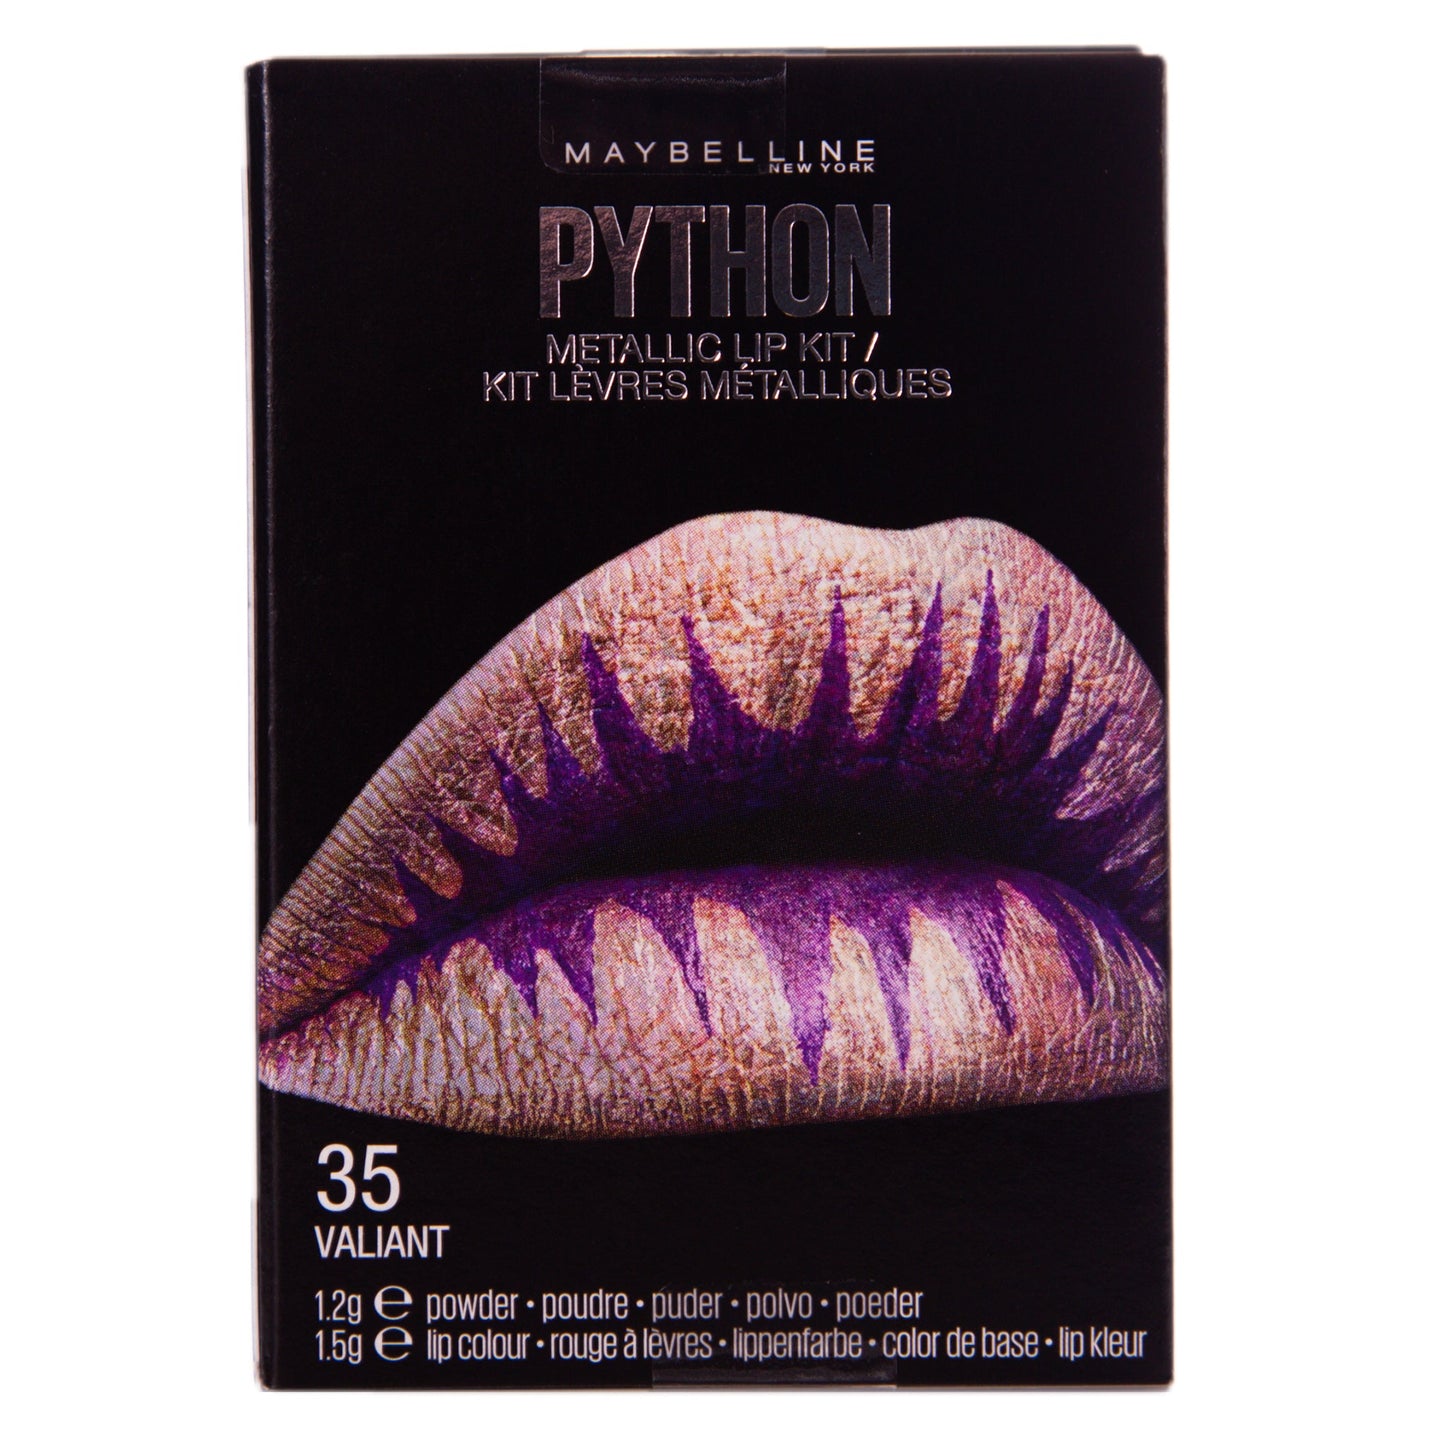 Maybelline Python Metallic Lip Kit Lipstick - Valiant